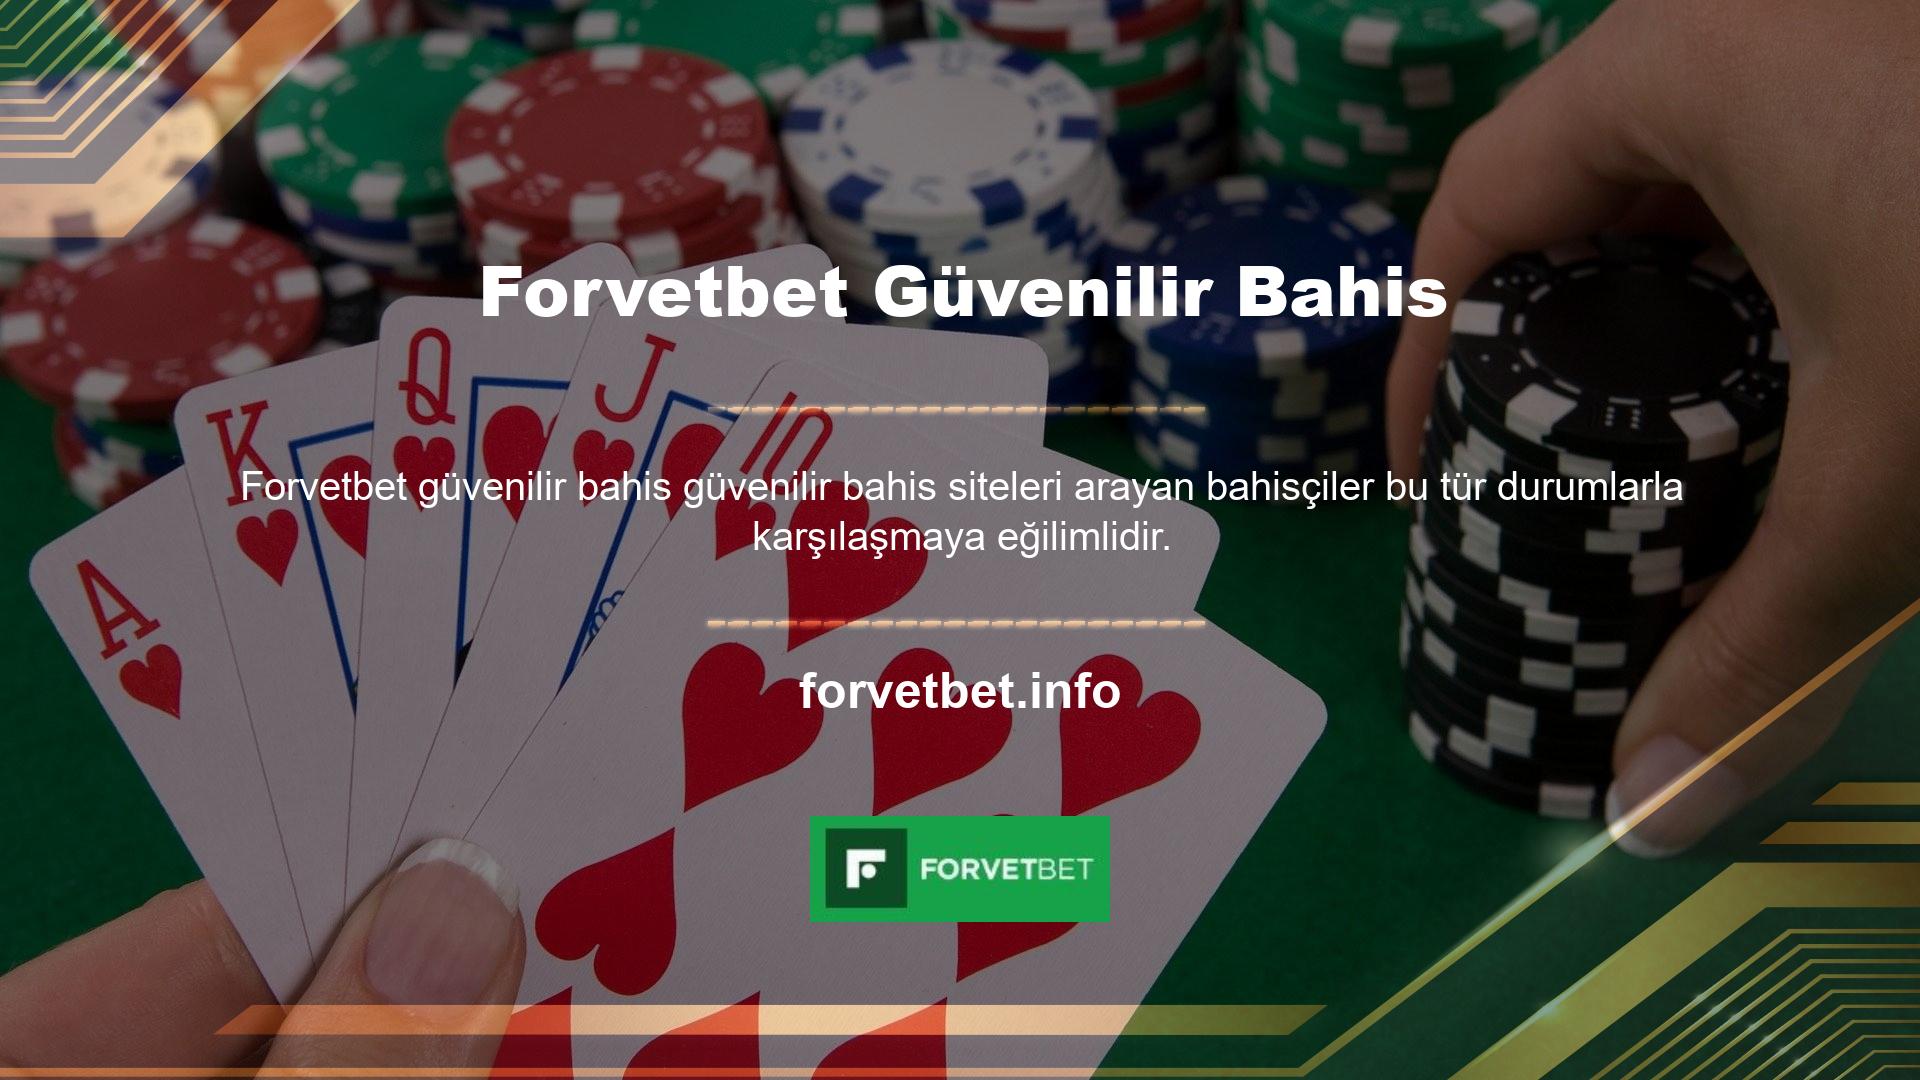 Ek olarak, Forvetbet casinosunun bahisçi karşılığının sınıflandırması nedir? En ünlü bahis siteleri arasındadır